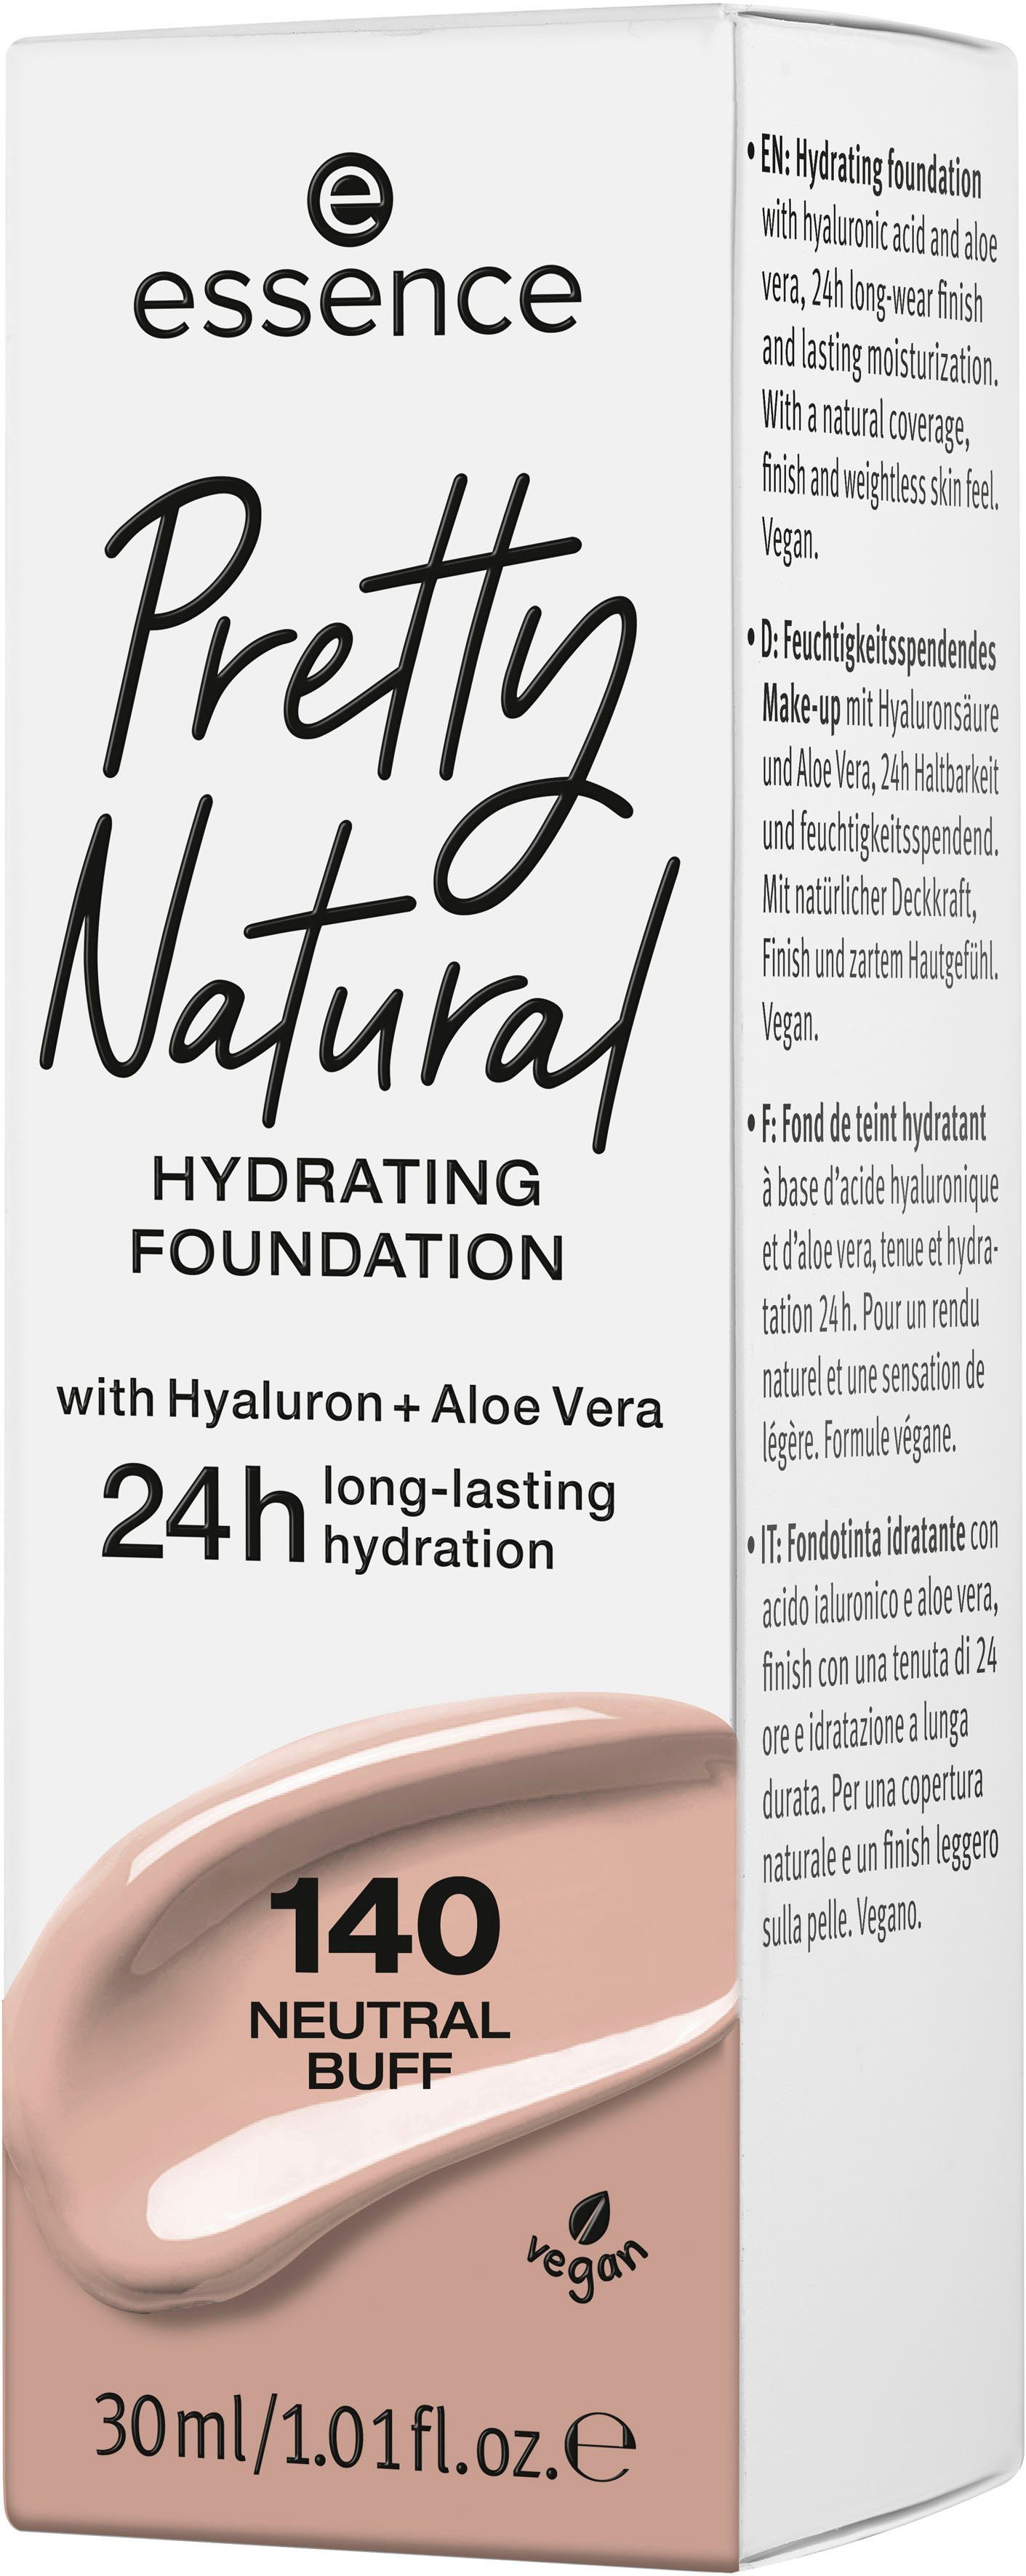 3-tlg. Foundation HYDRATING, Neutral Pretty Essence Buff Natural